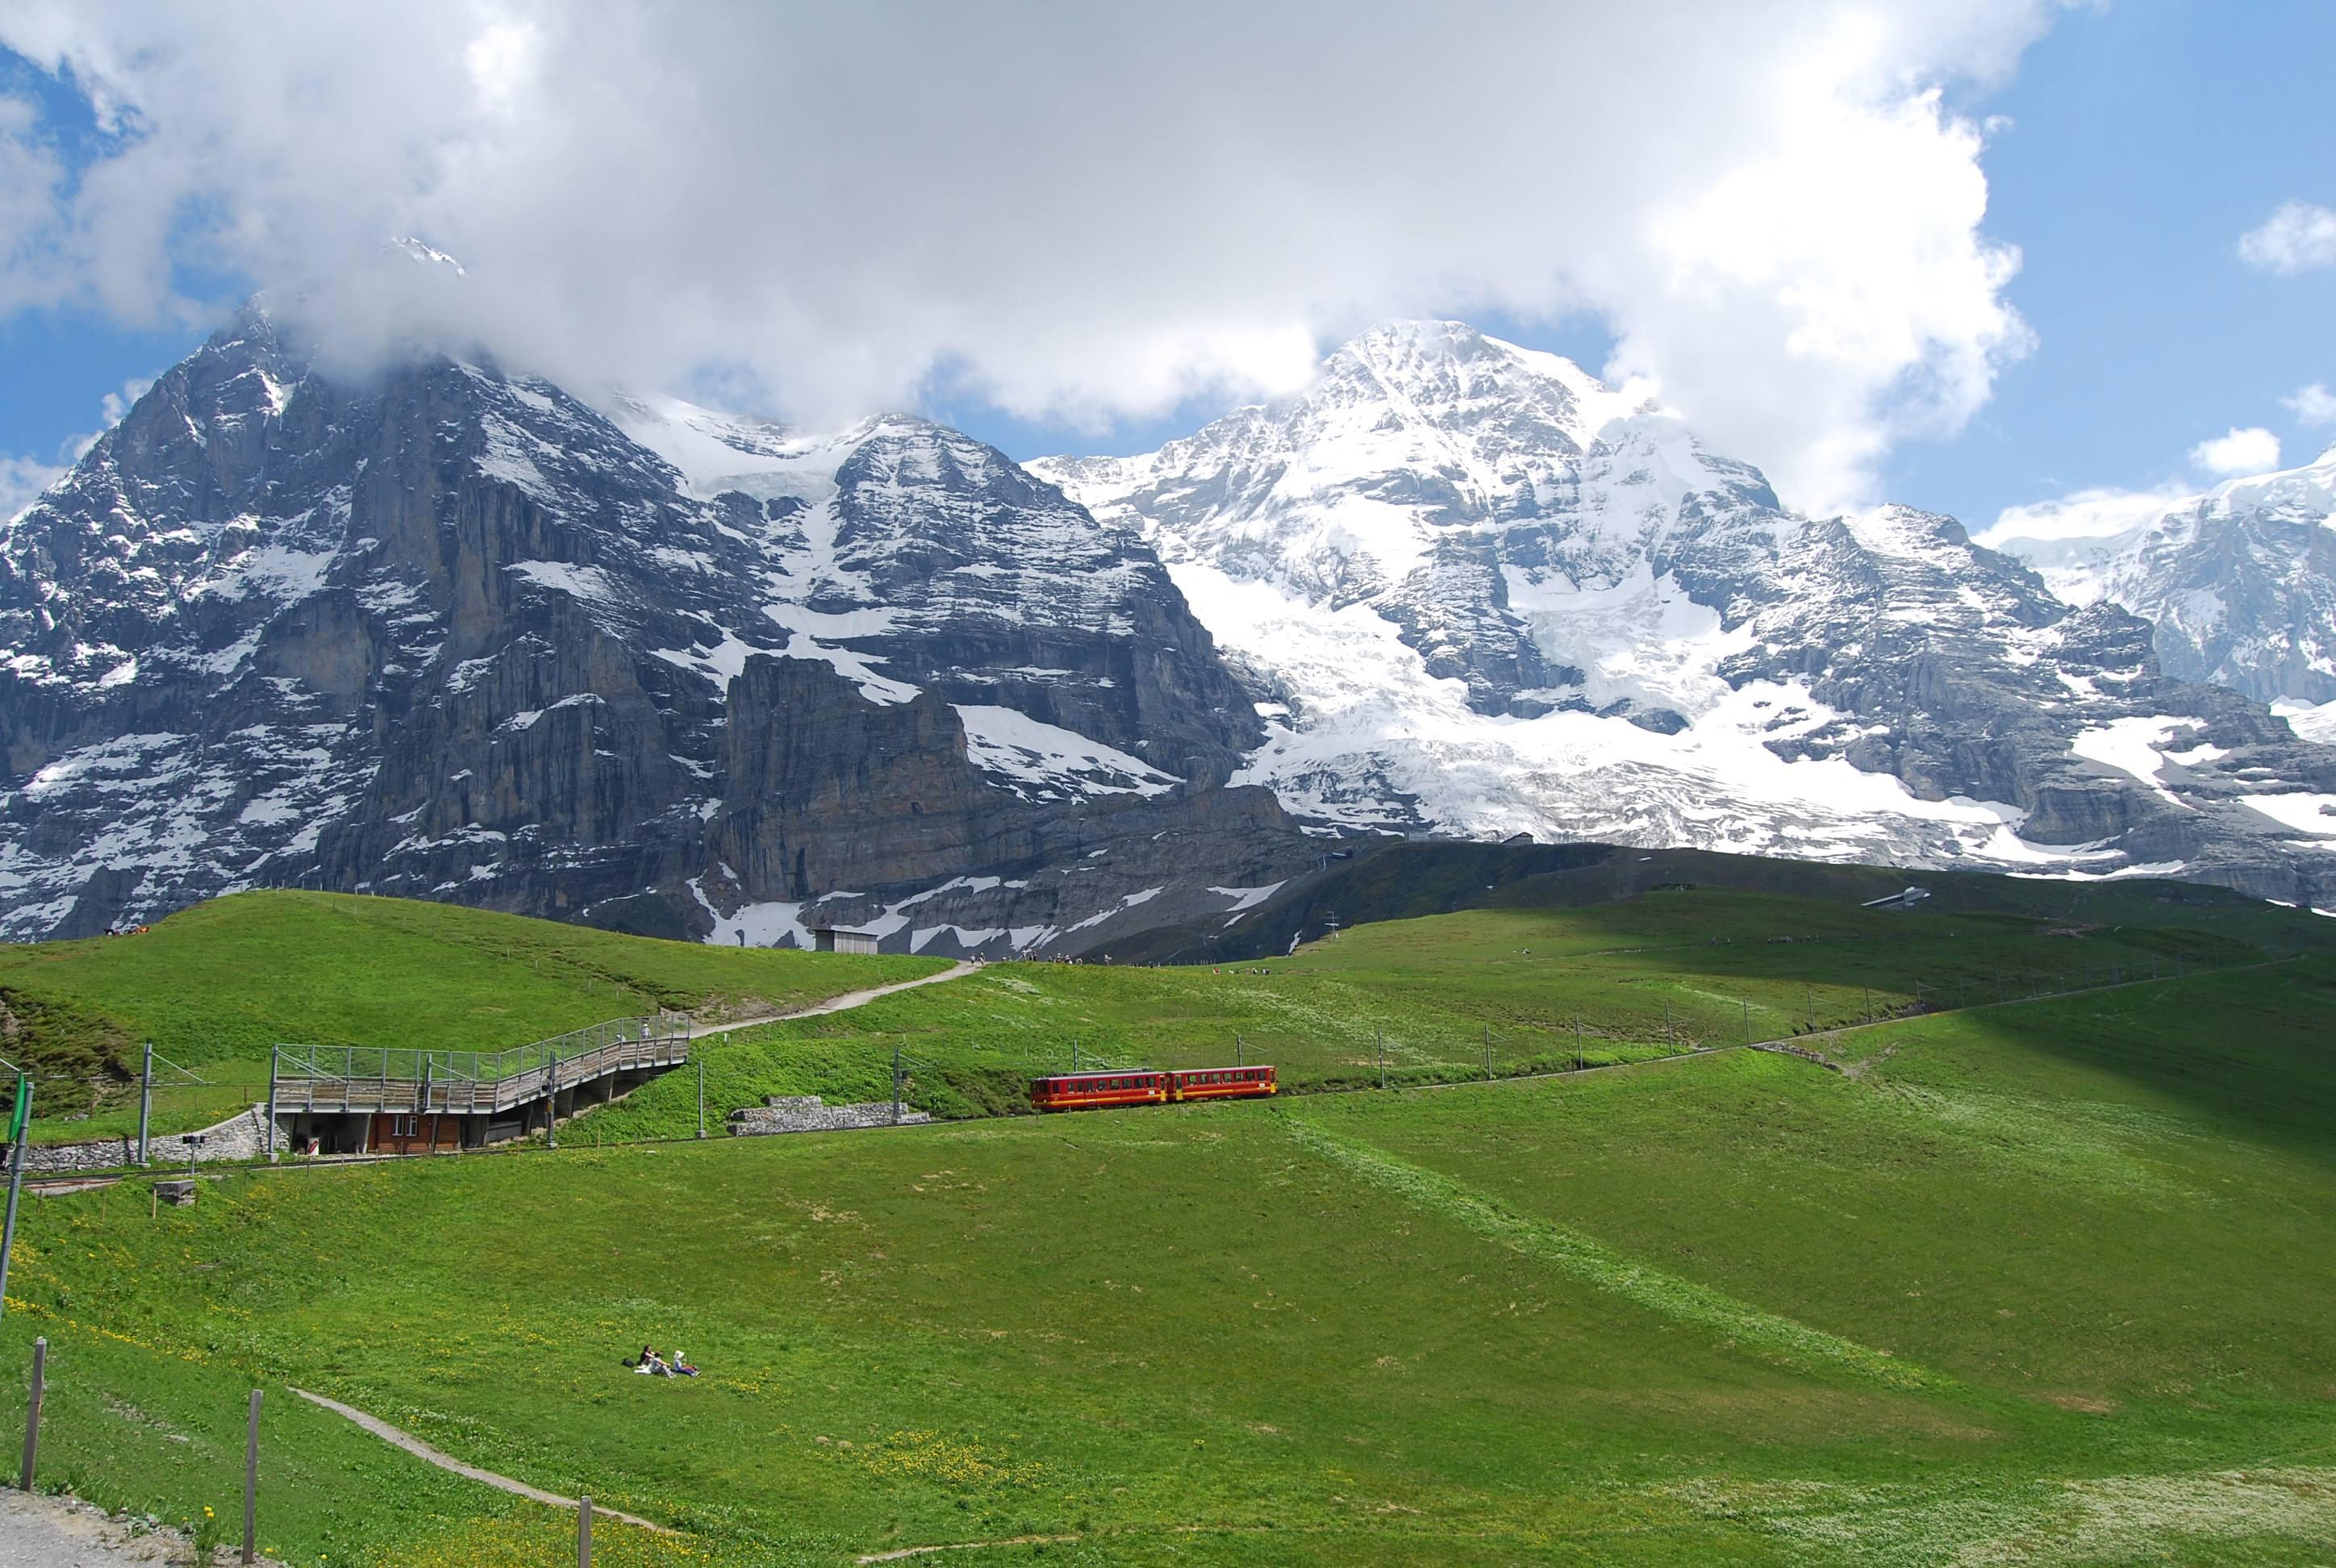 瑞士著名景点排名大全图片